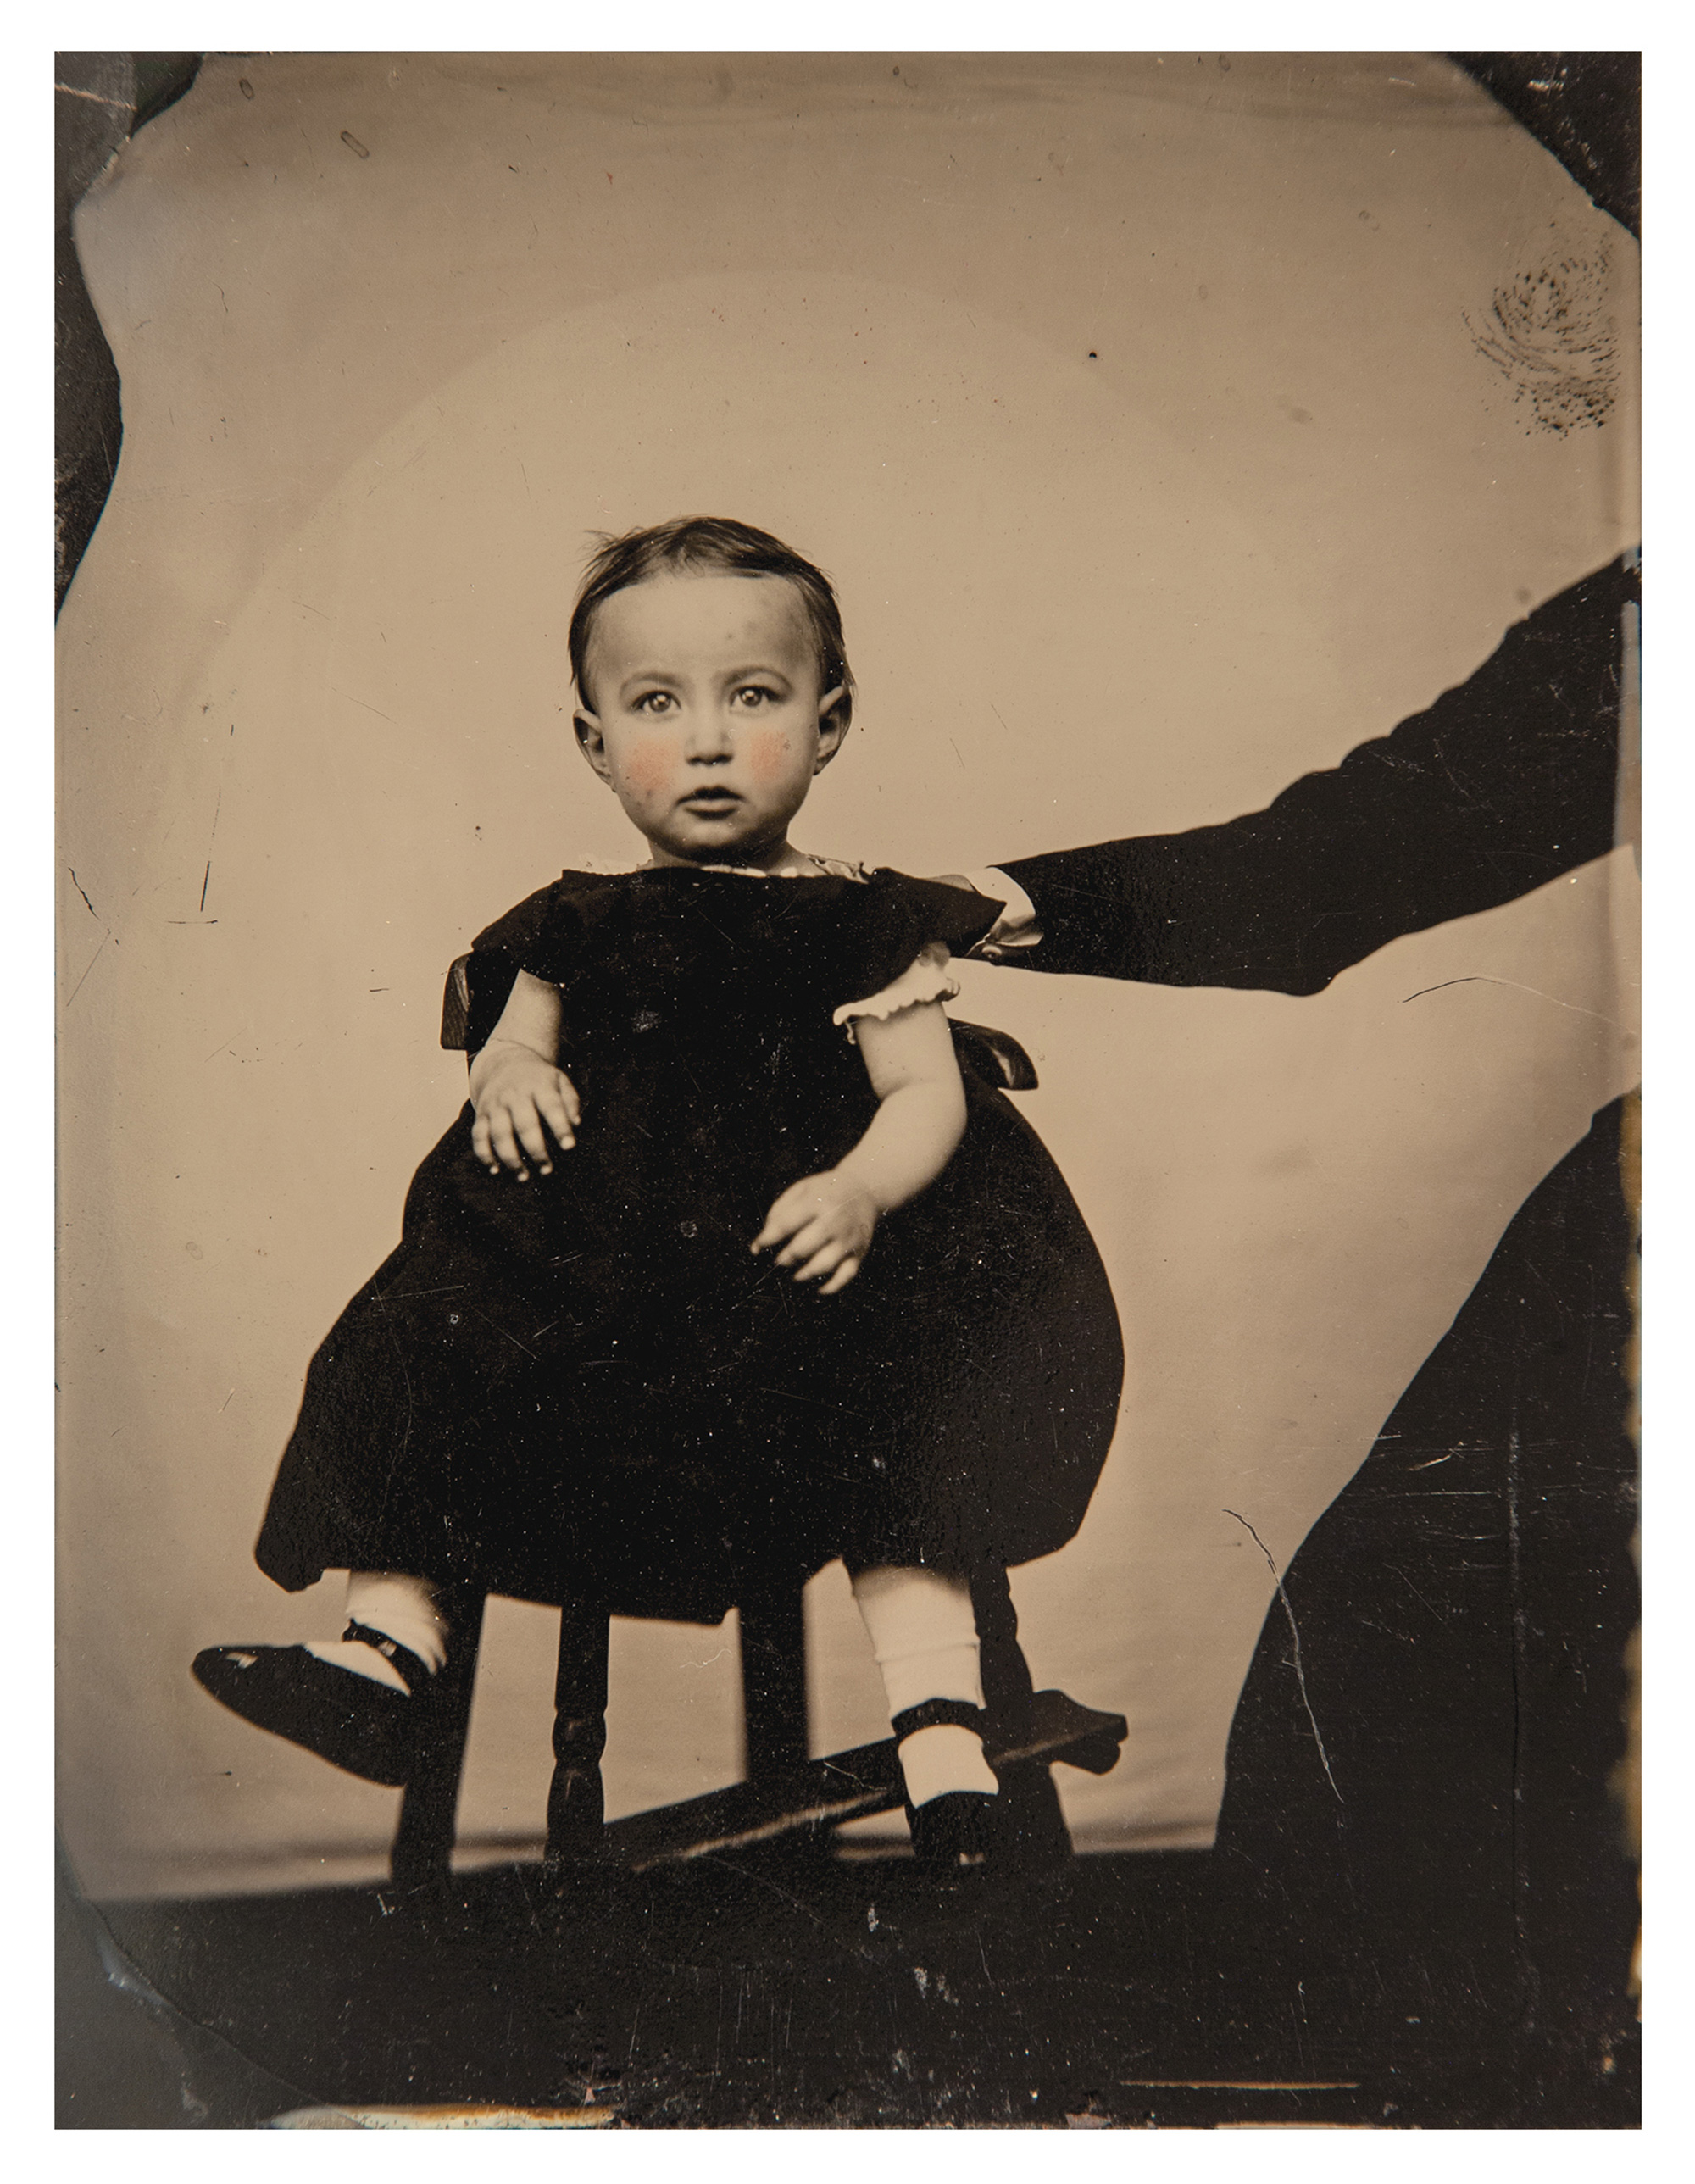 A portrait photograph of a child.